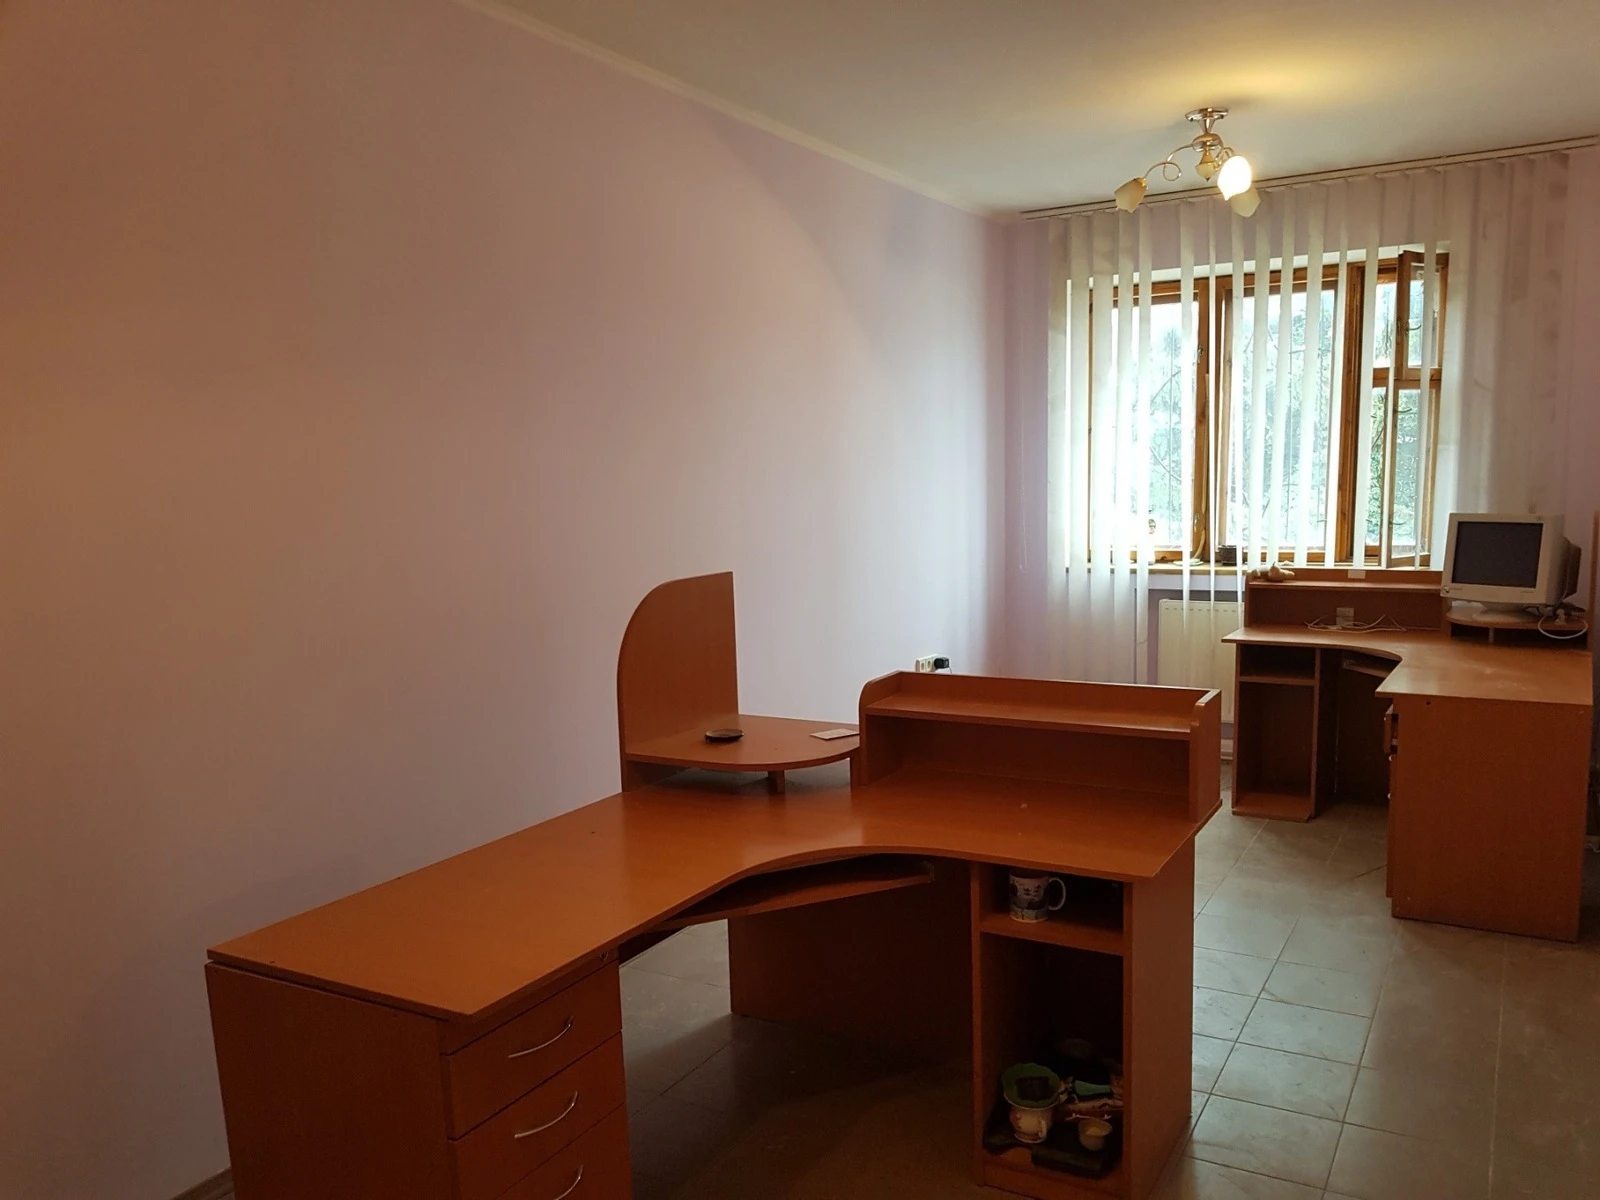 Real estate for sale for commercial purposes. 120 m², 3rd floor/3 floors. Promyshlennyy, Ternopil. 